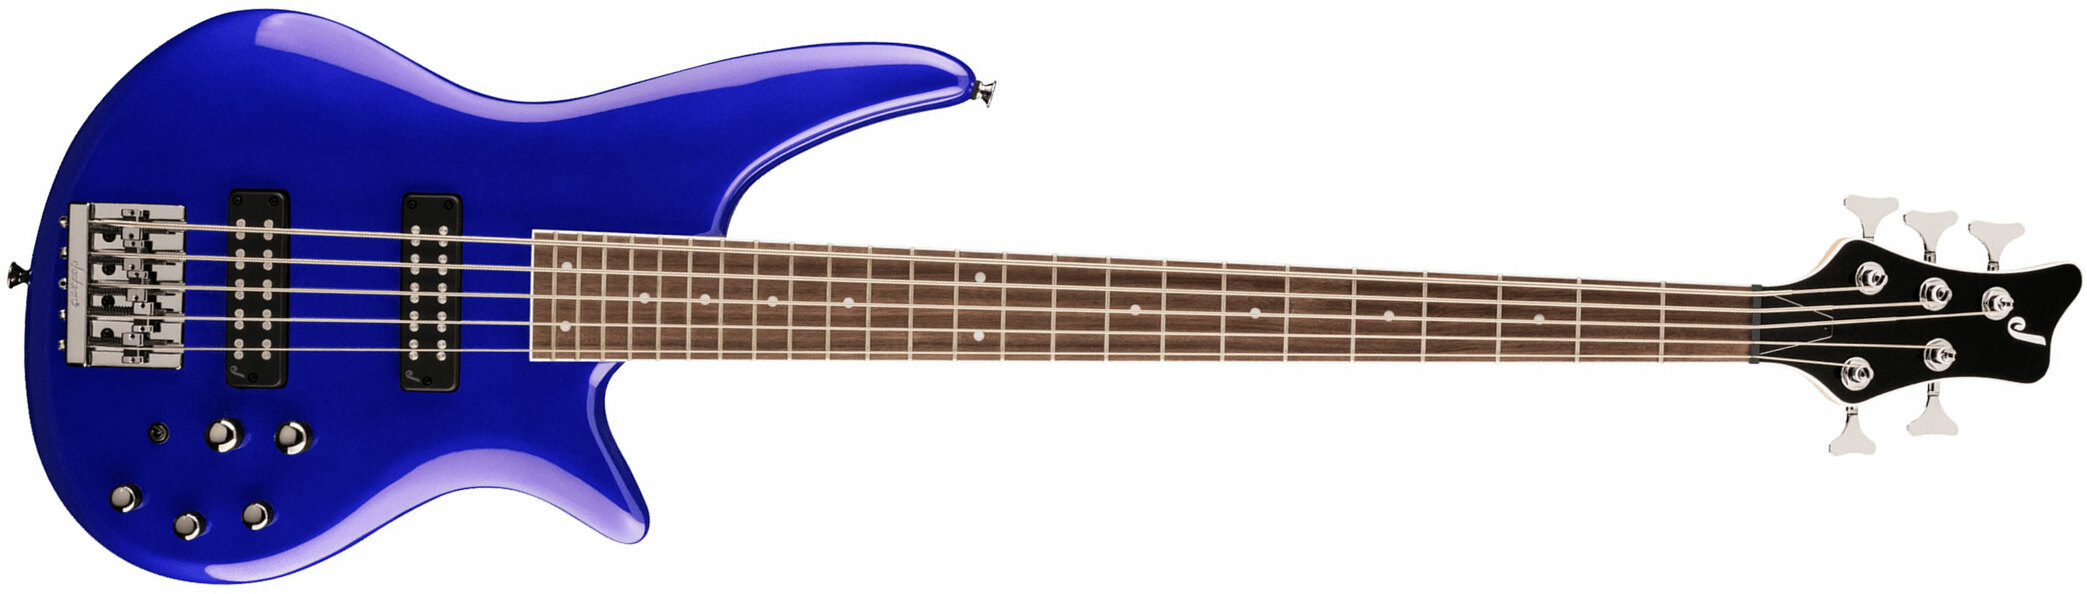 Jackson Spectra Bass Js3v 5c Active Lau - Indigo Blue - Basse Électrique Solid Body - Main picture